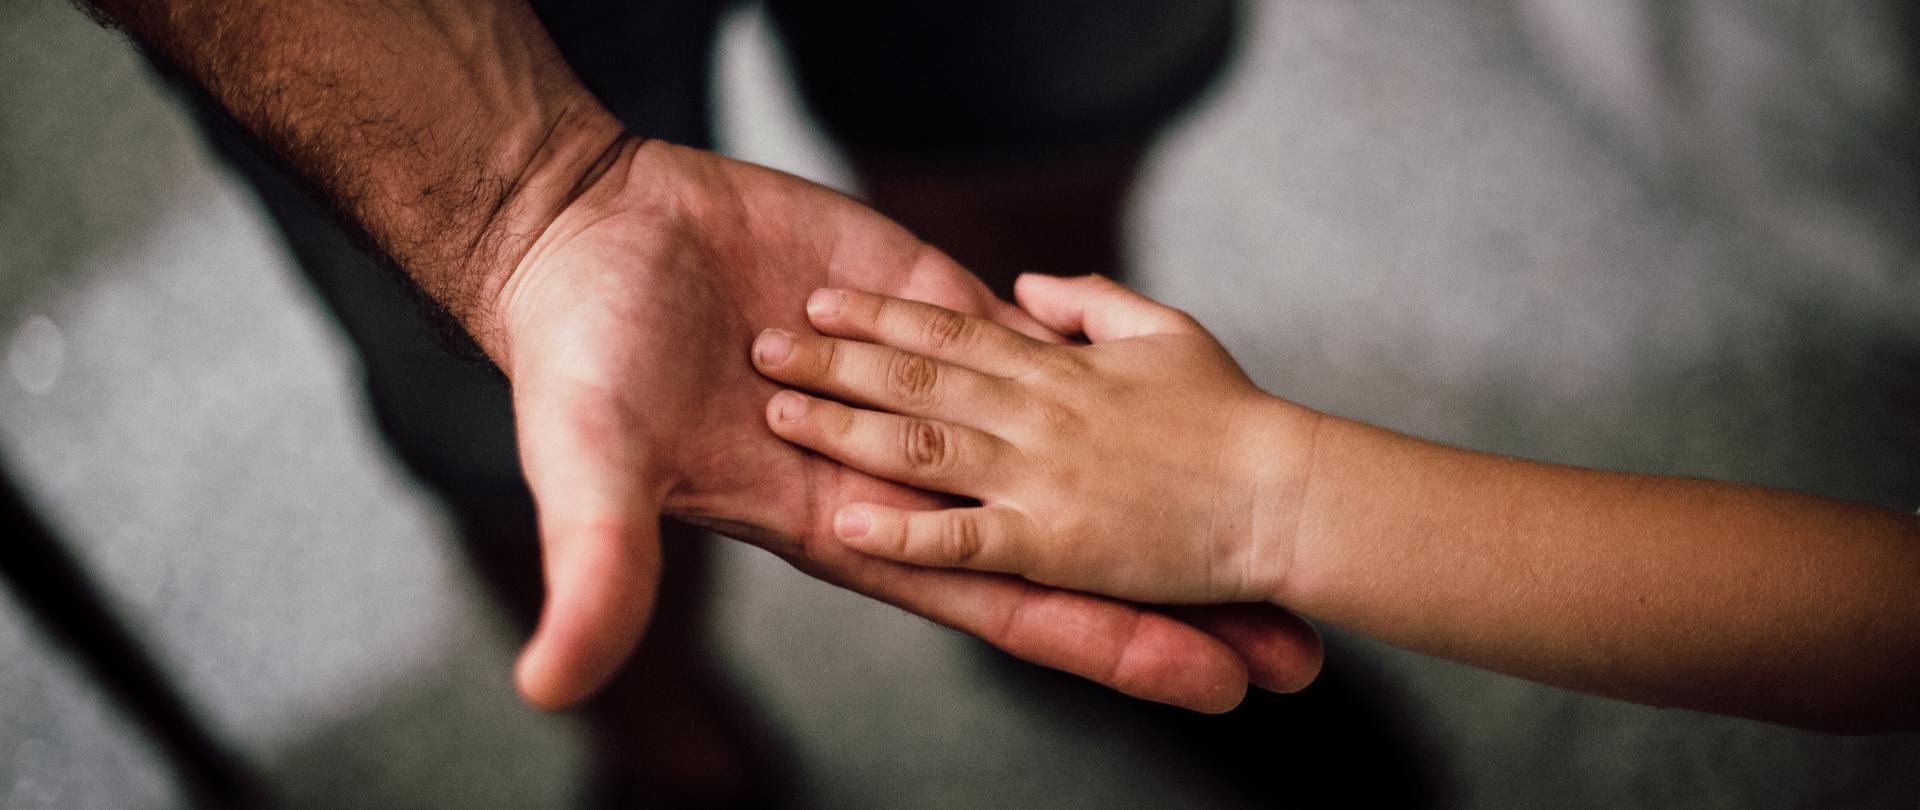 Dłoń dziecka położona na dłoni osoby dorosłej